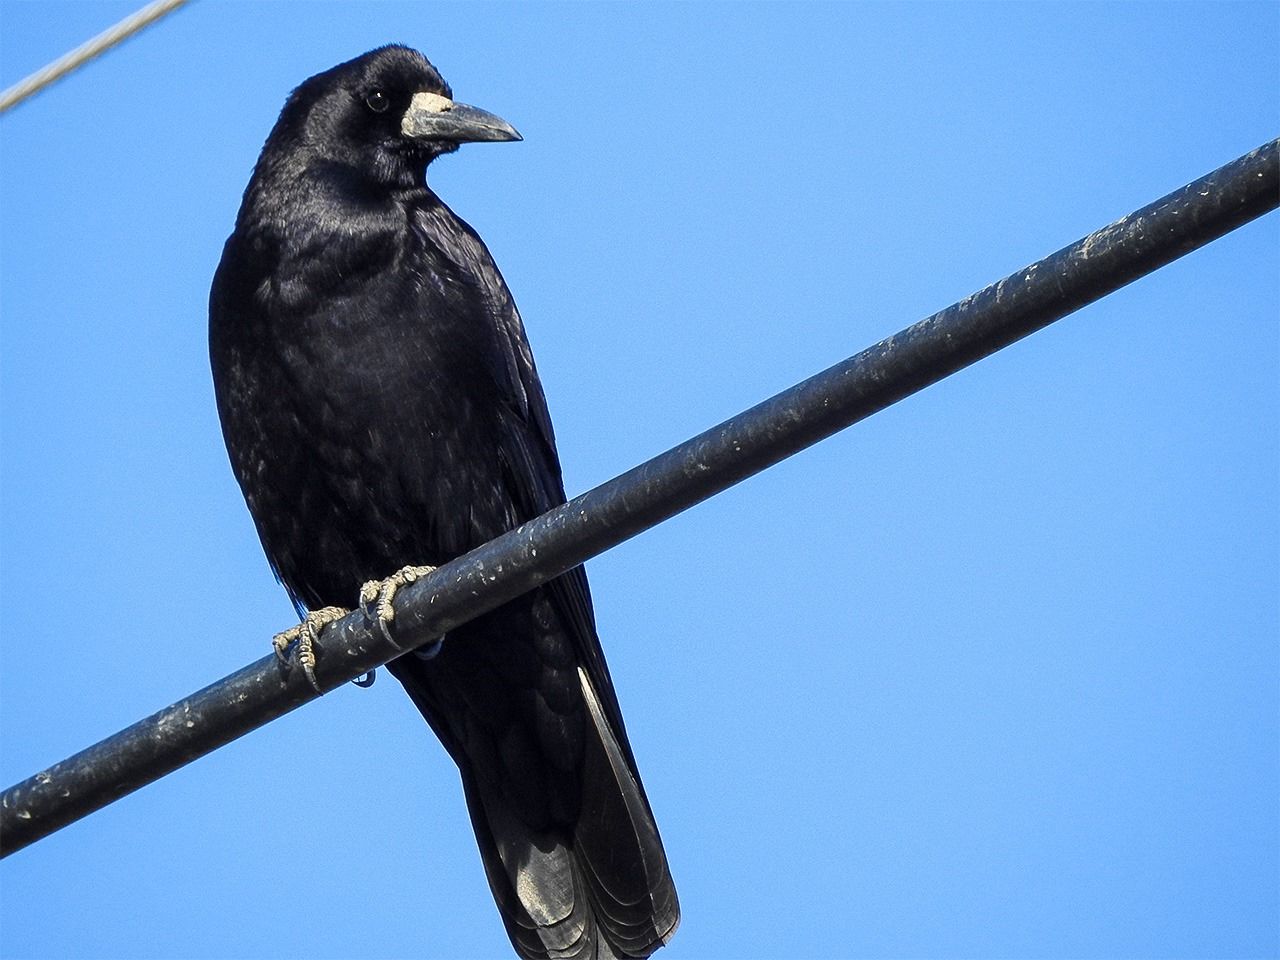 Le corbeau freux : il a pour signe distinctif la base de son bec, grise ; oiseau migrateur, il passe l’hiver au Japon